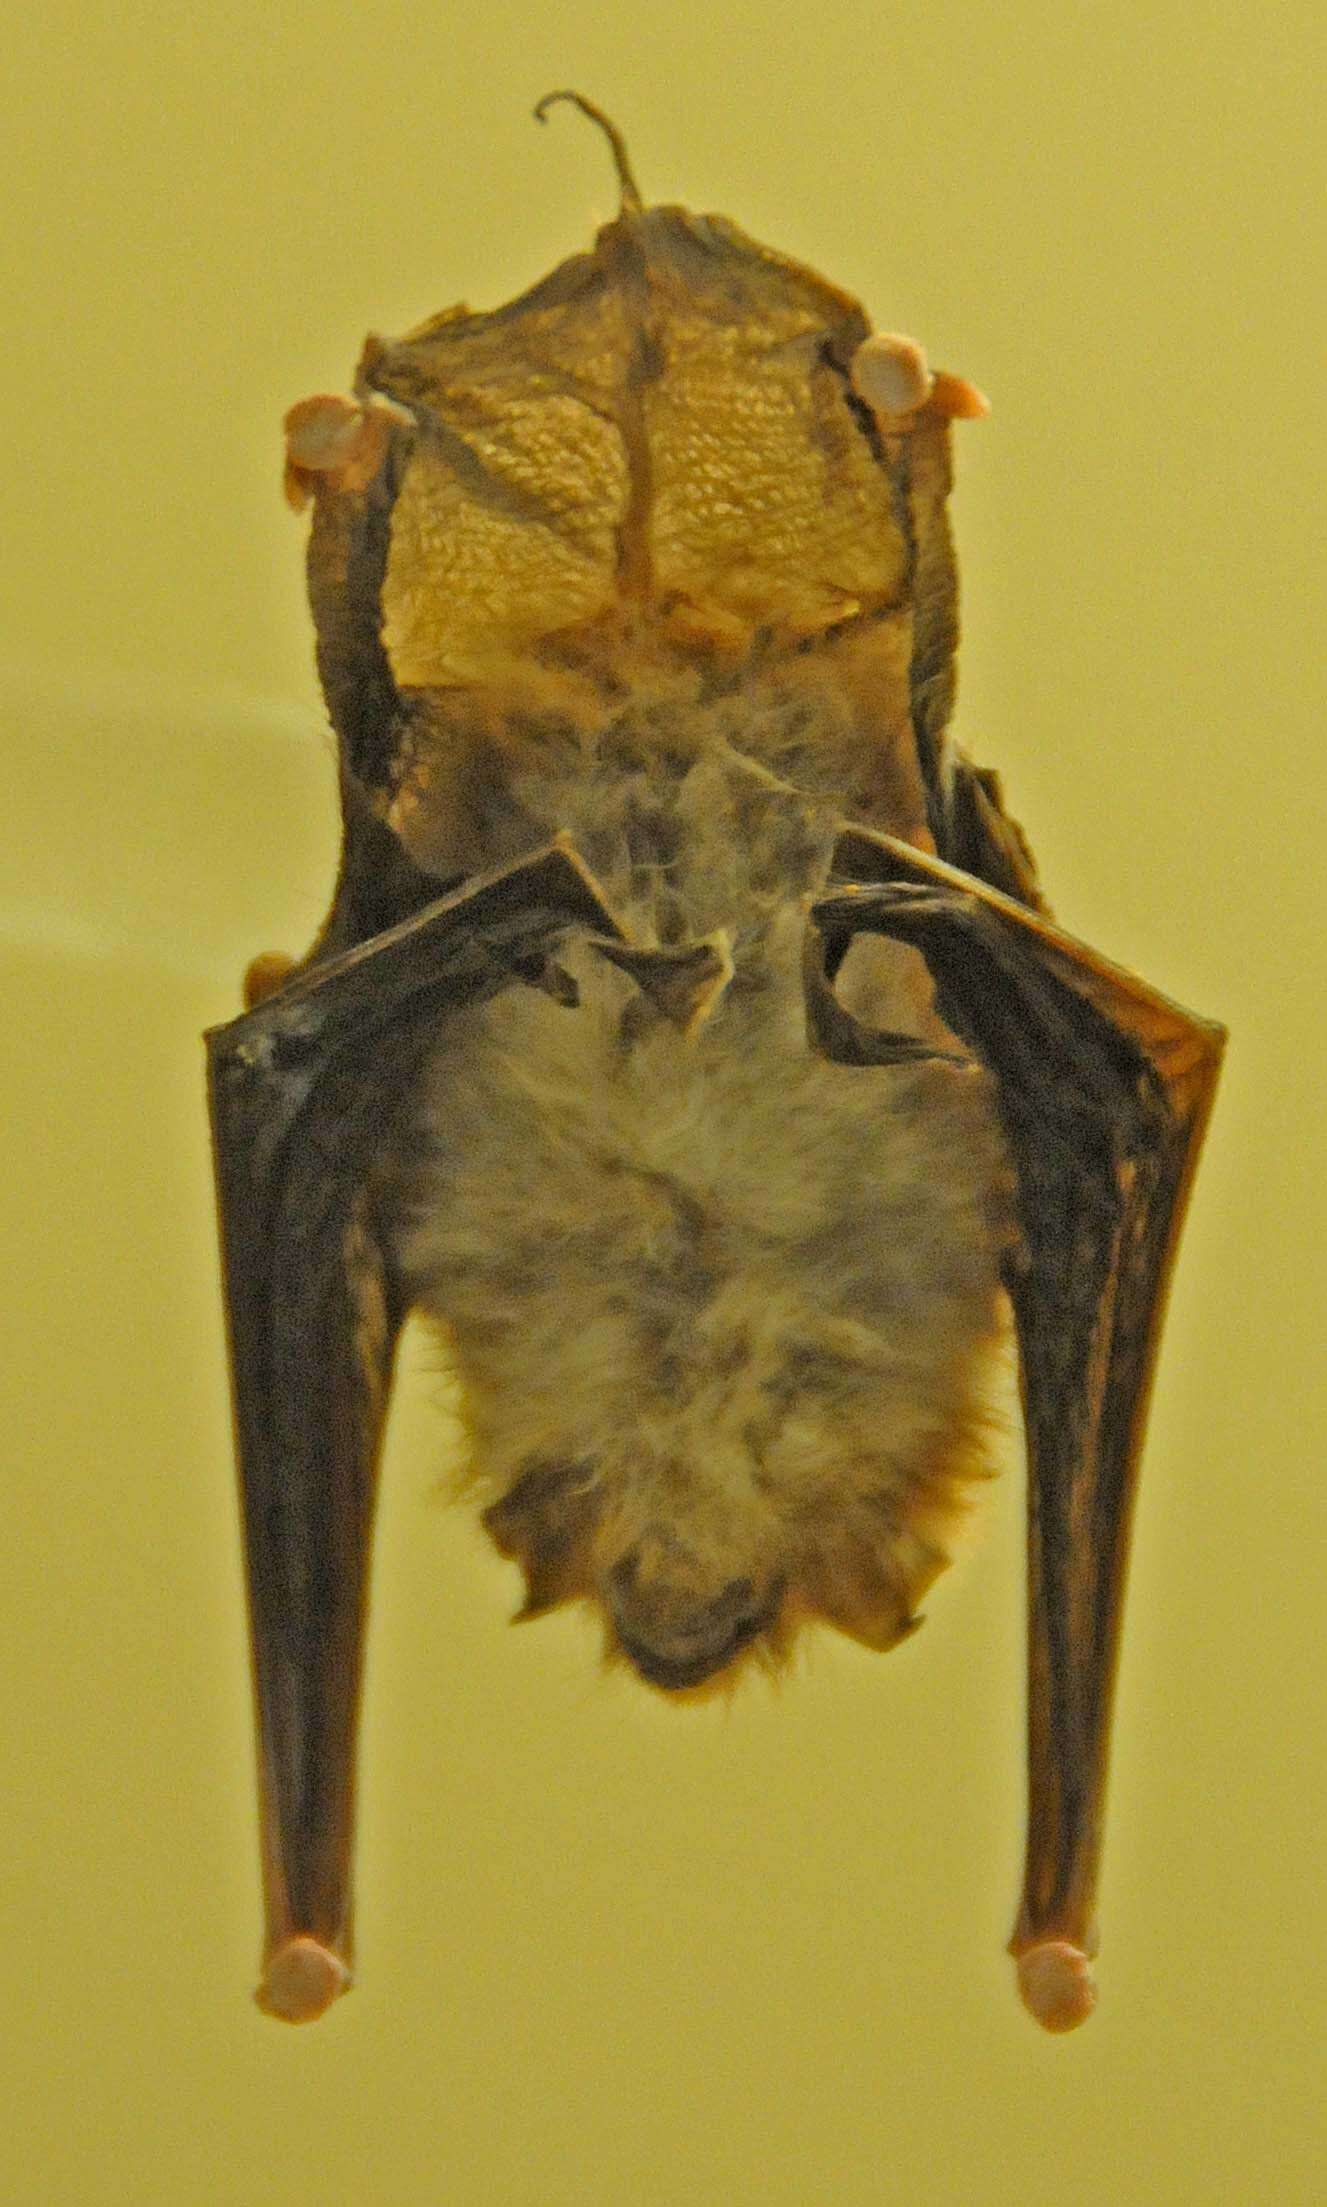 Sivun Thyroptera tricolor albiventer (Tomes 1856) kuva